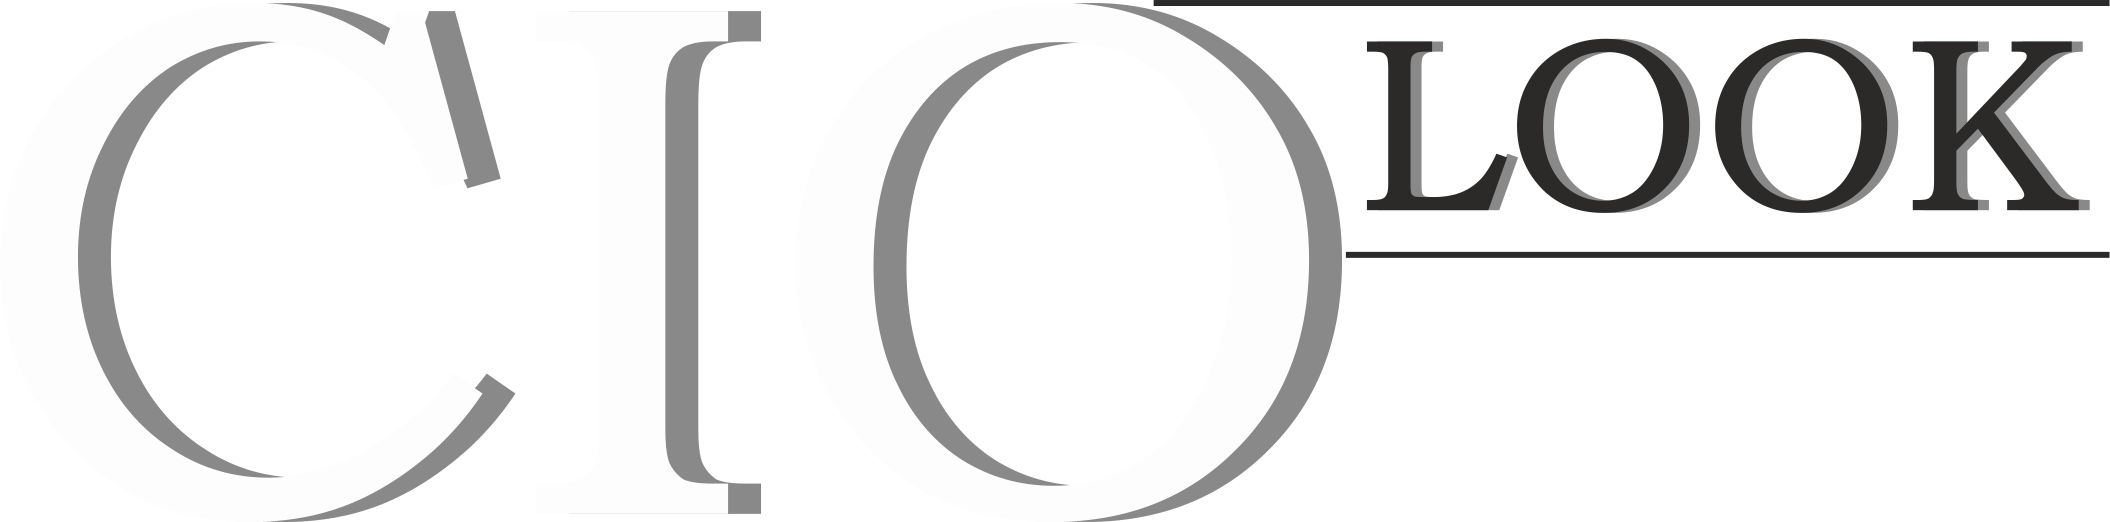 ciolook logo